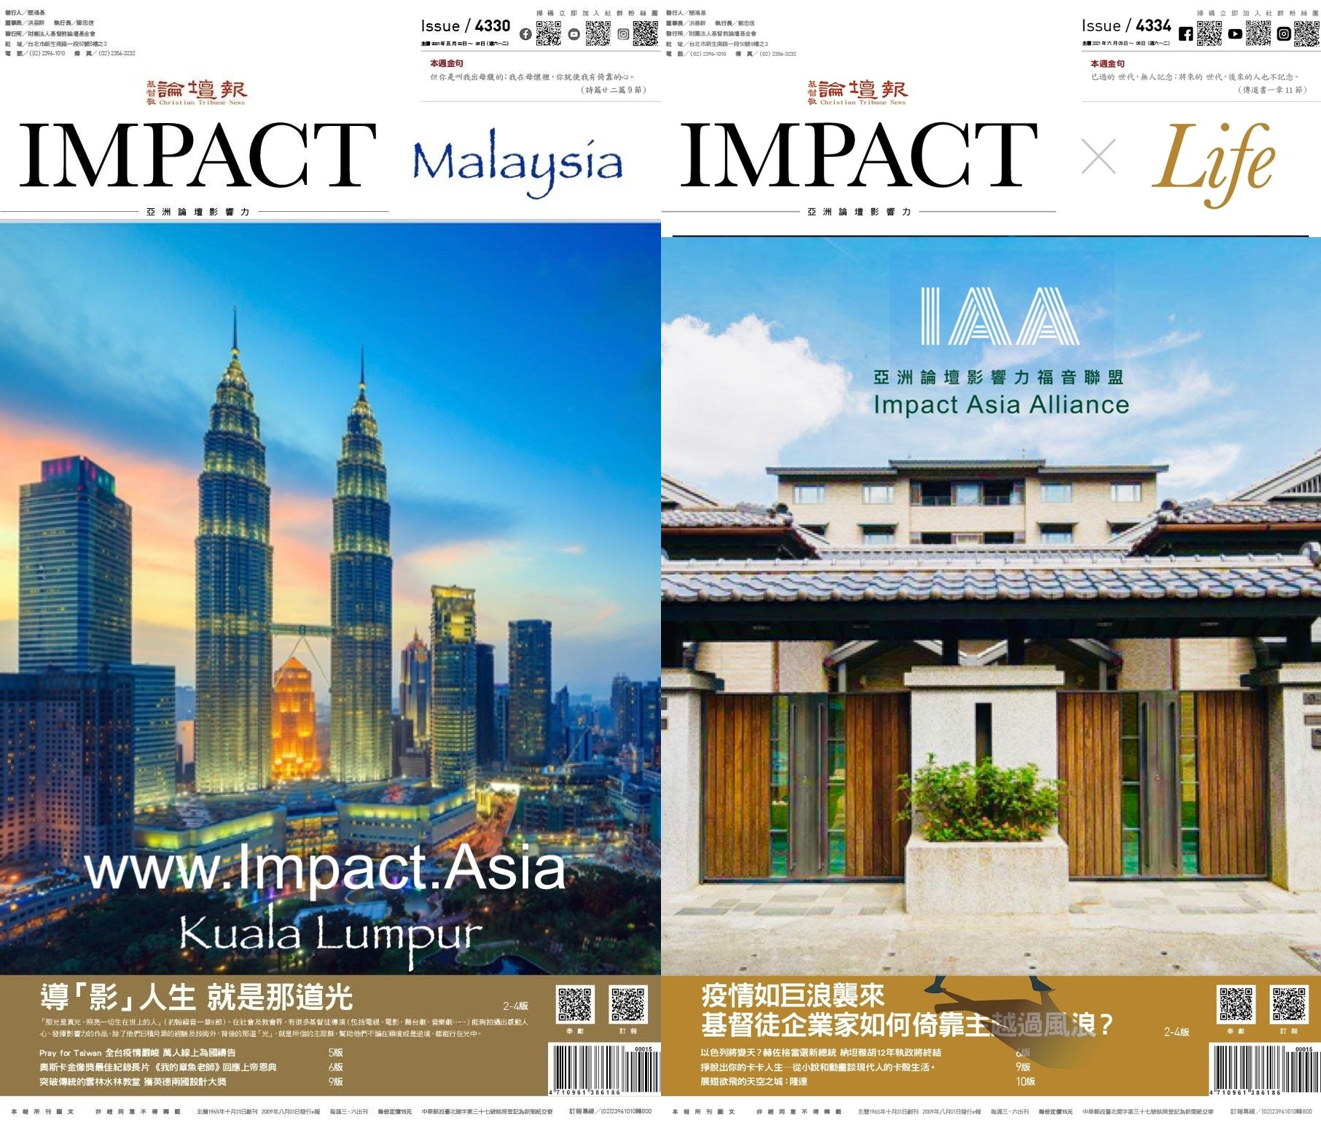  「亞洲論壇影響力-馬來西亞」計畫示意圖